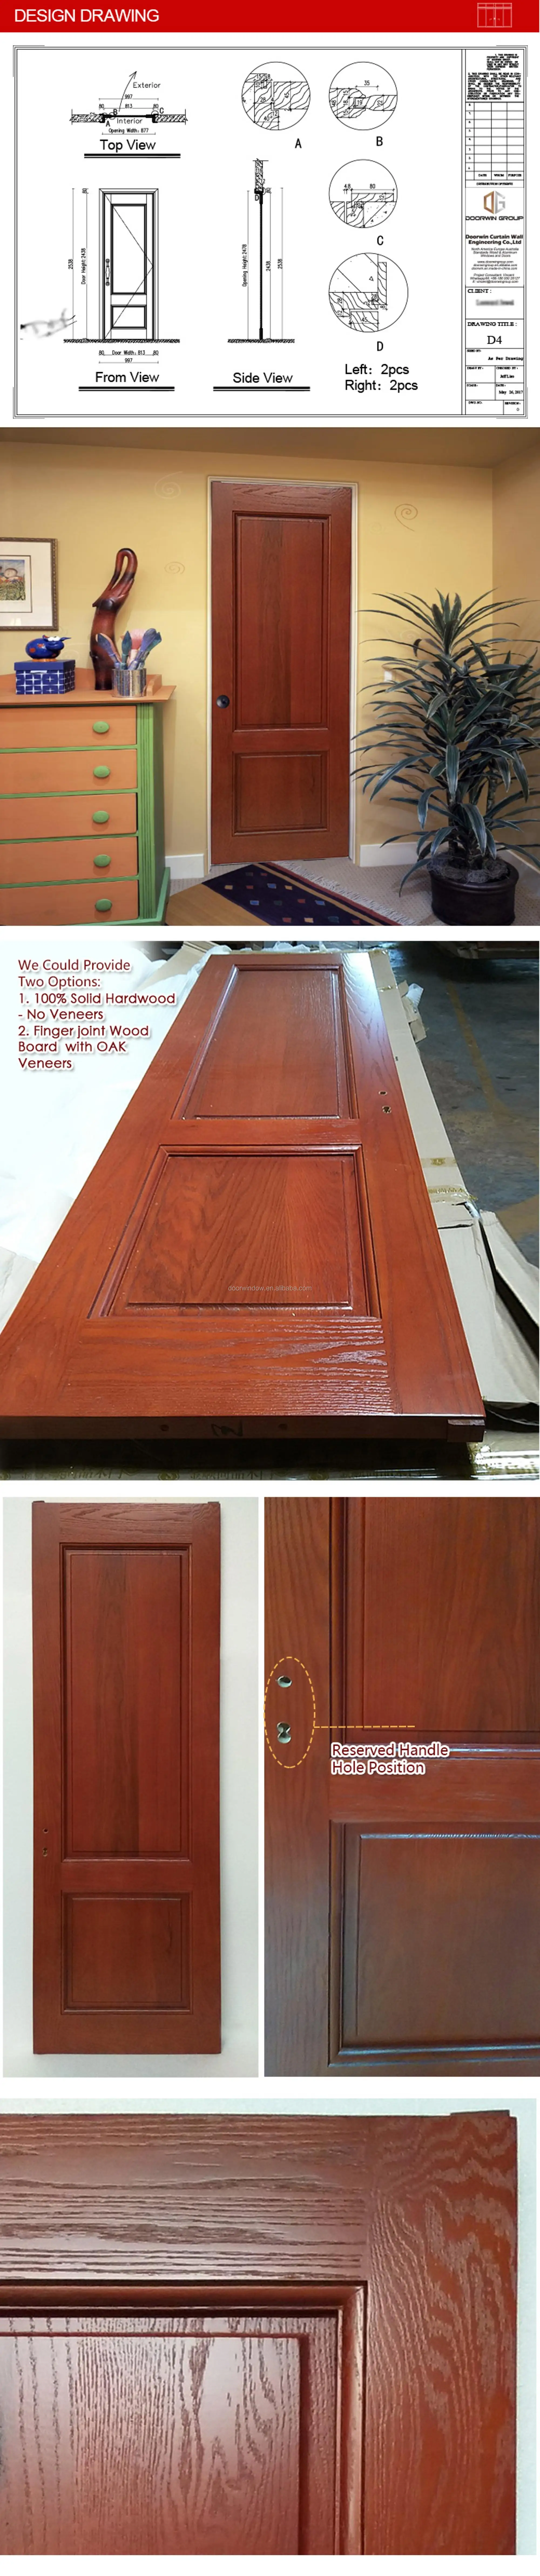 Latest Design Solid Wooden Interior Room Door right handed inswing wooden cafe doors